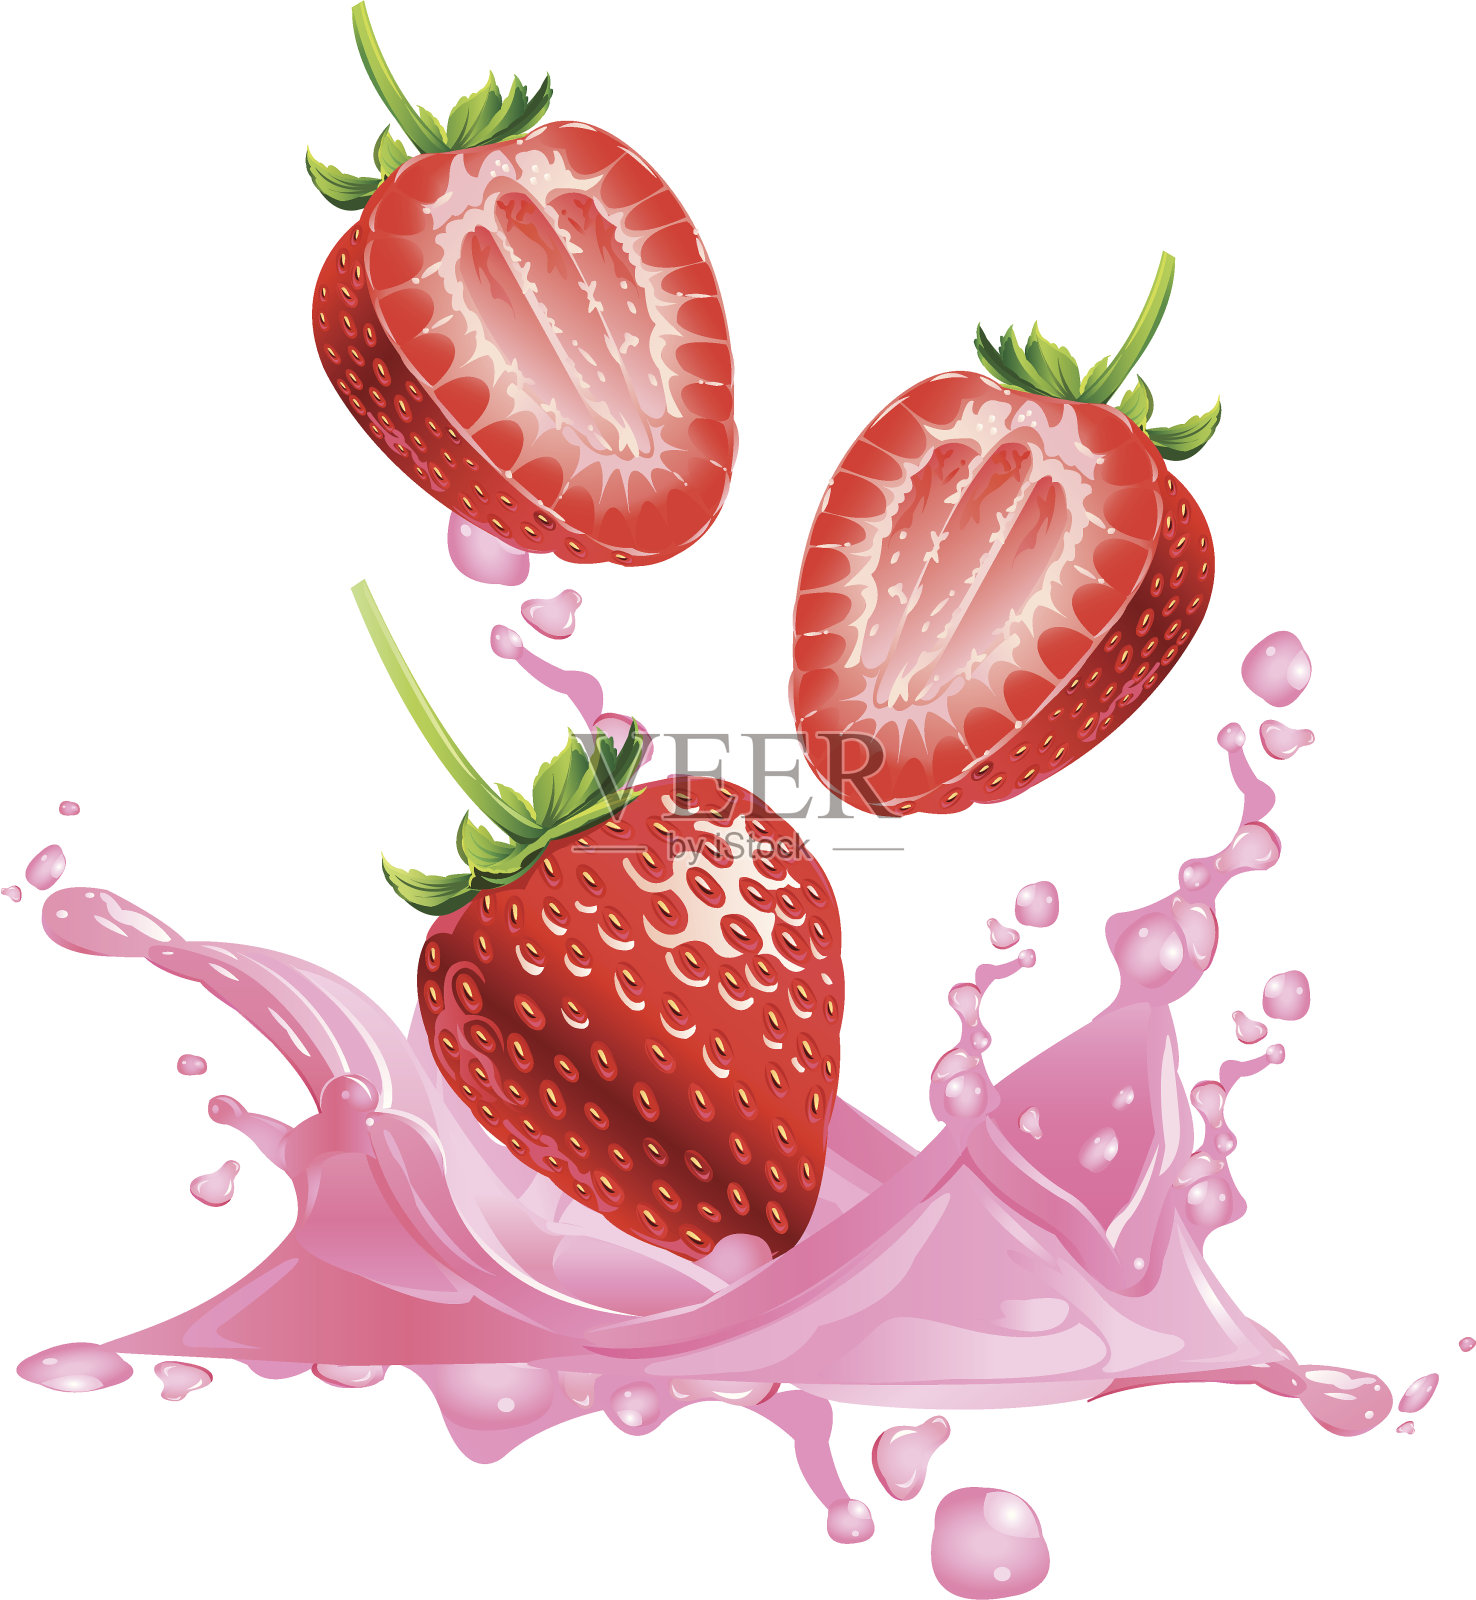 草莓溅进装满奶昔的杯子里。插画图片素材